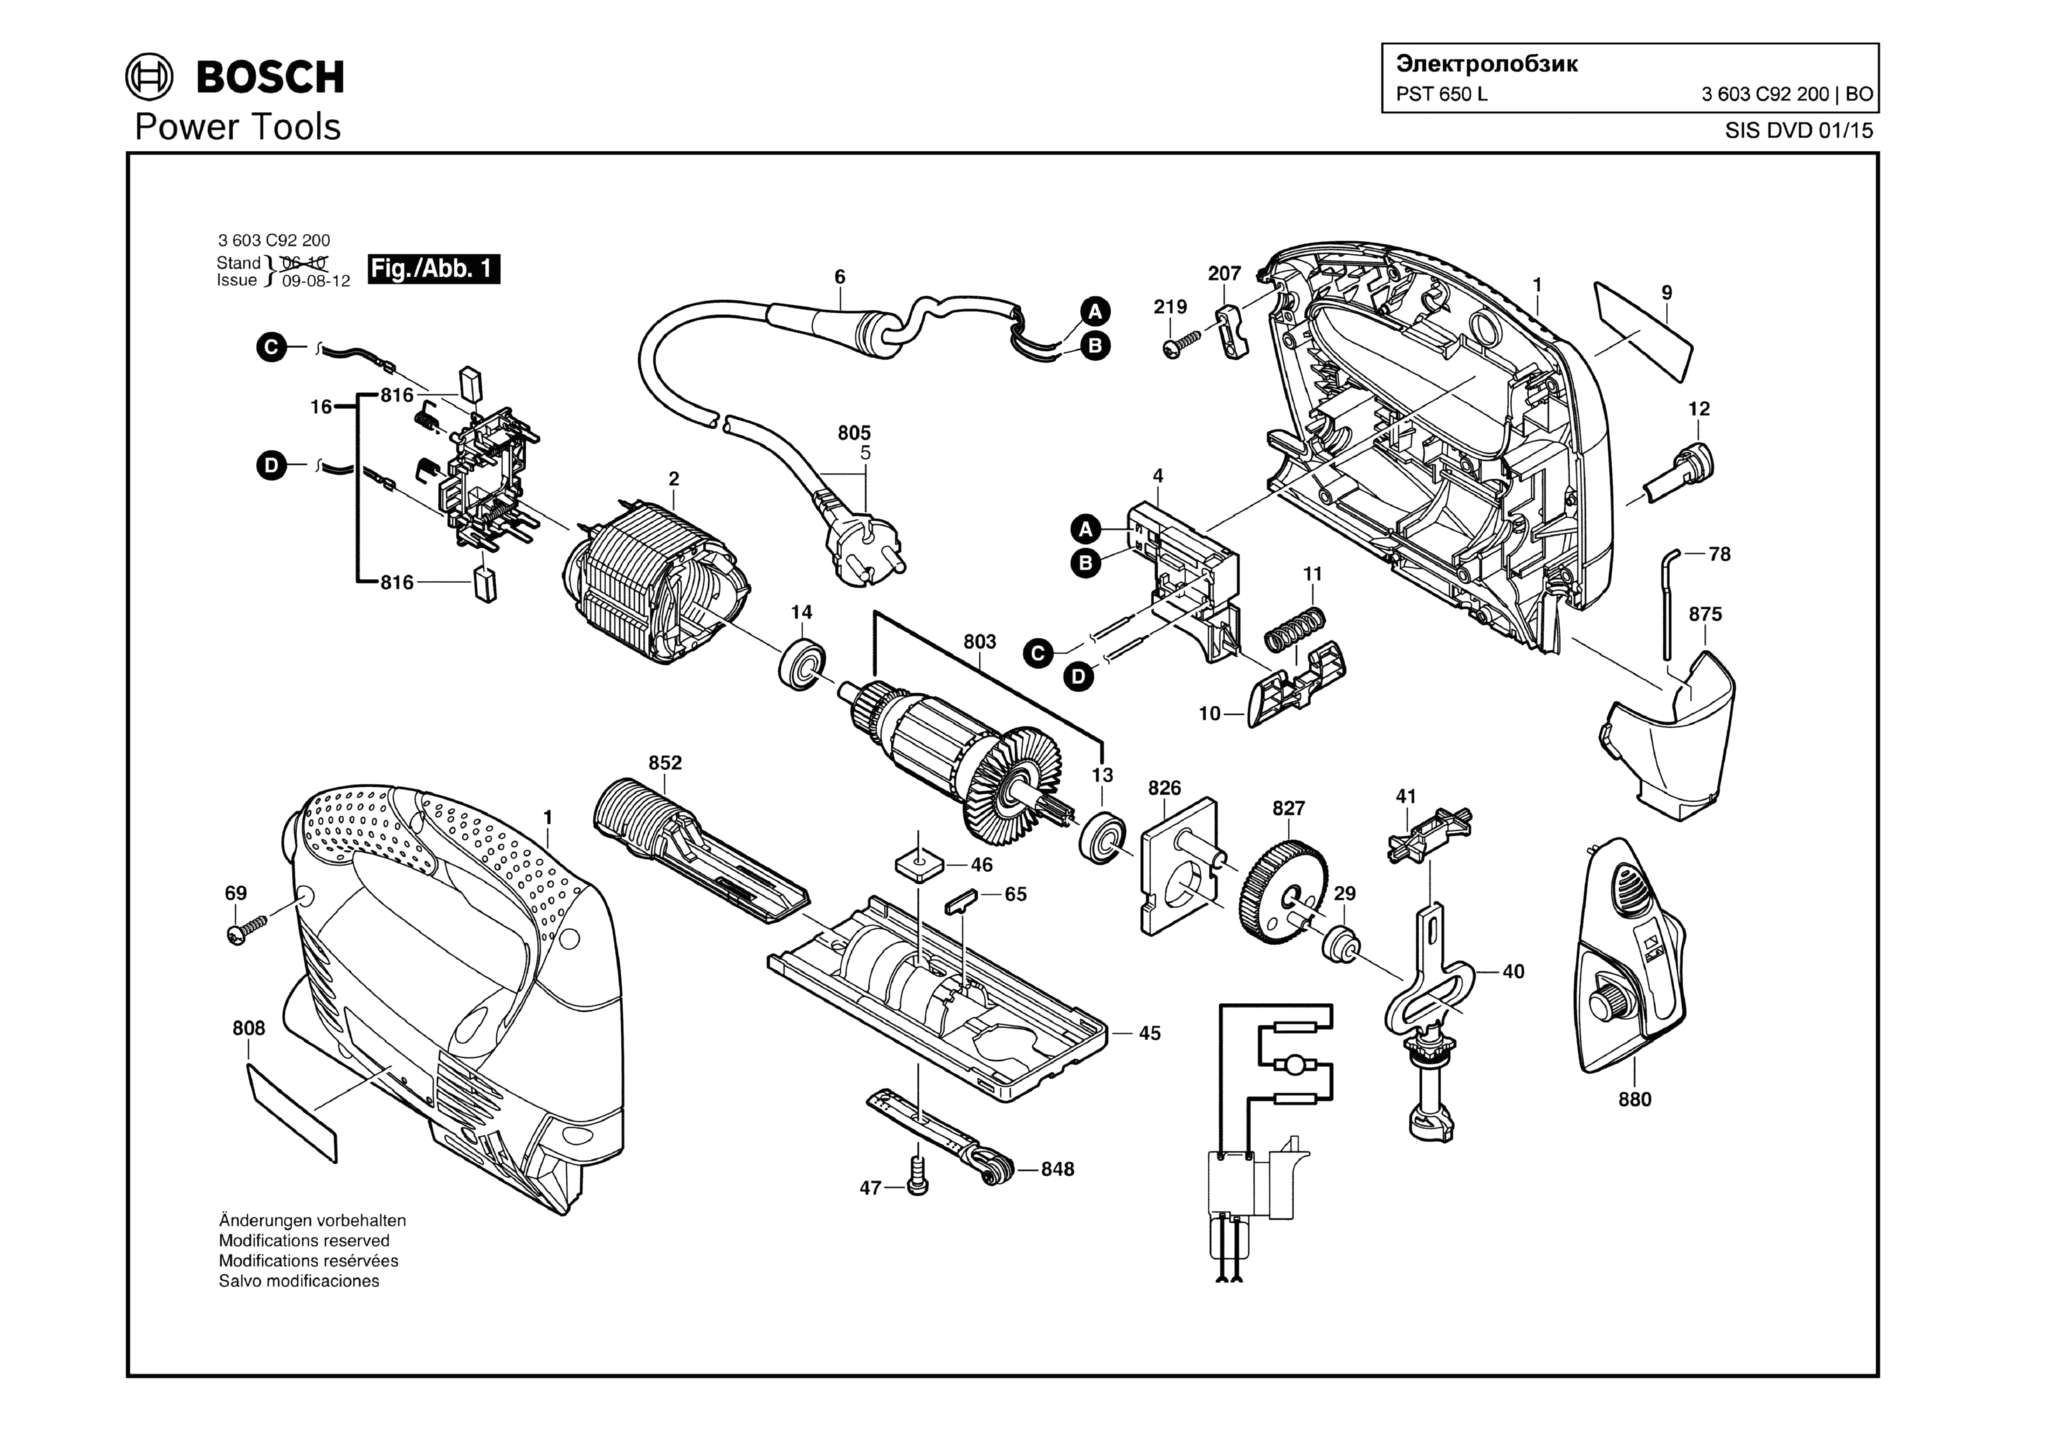 Запчасти, схема и деталировка Bosch PST 650 L (ТИП 3603C92200)